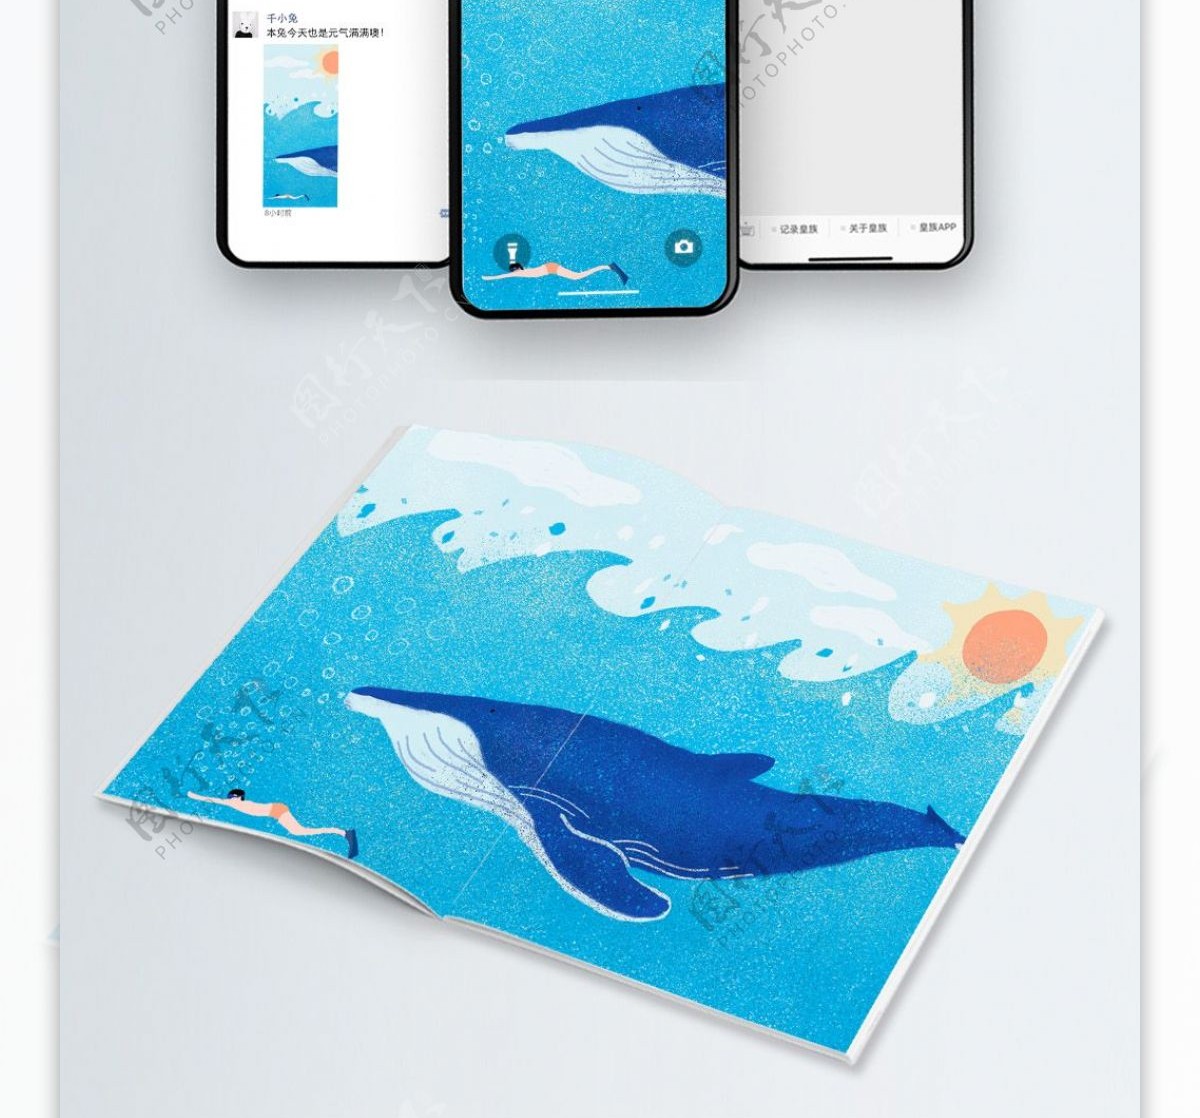 蓝色噪点小清新治愈插画壁纸图册psd鲸鱼